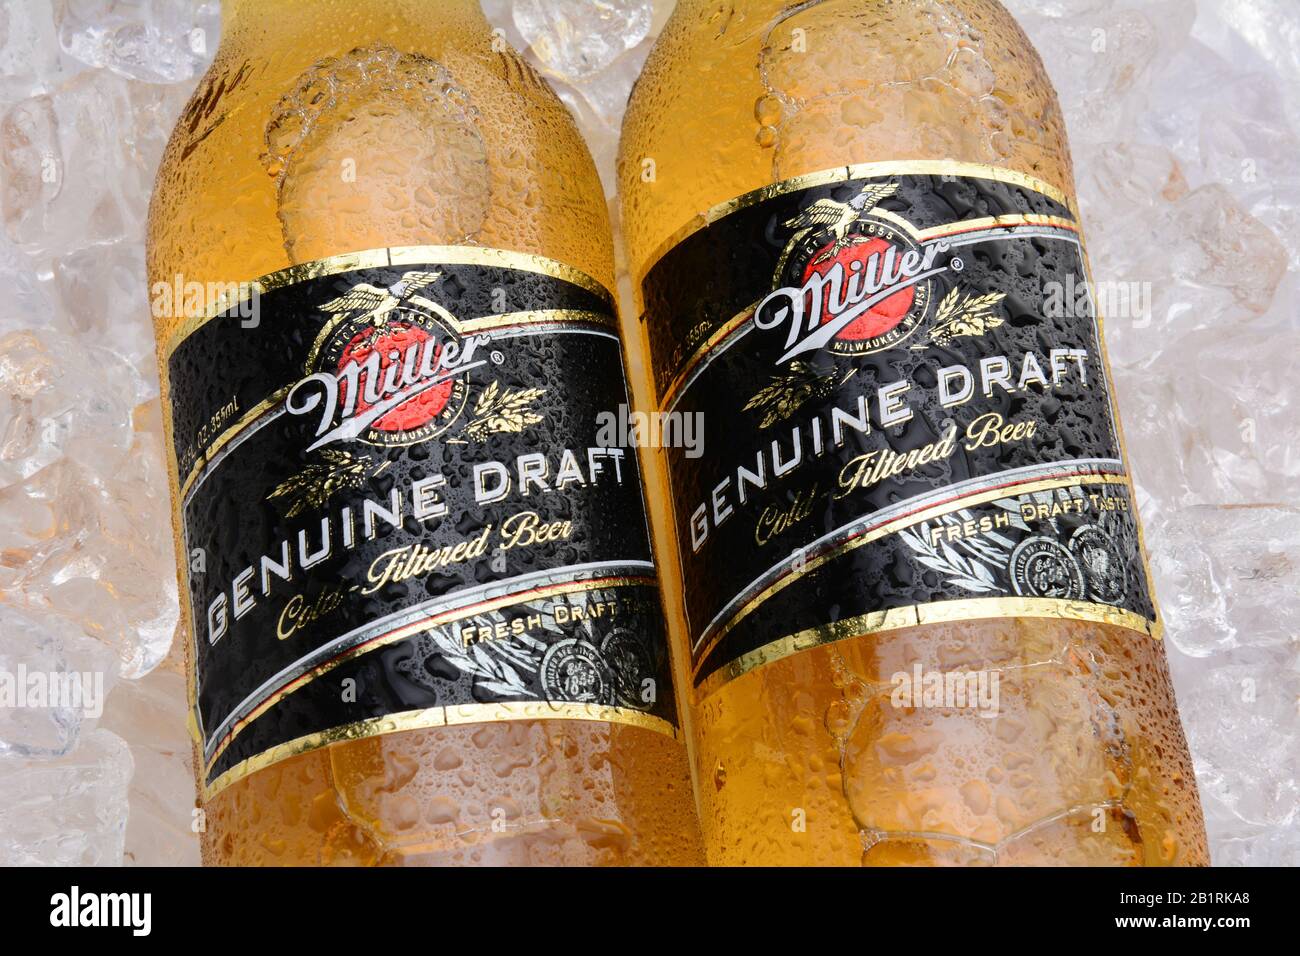 Irvine, CA - 27 MAGGIO 2014: Due bottiglie di Miller Genuine Draft, su ghiaccio. MGD è fatto realmente dalla stessa ricetta come Miller High Life tranne che è col Foto Stock